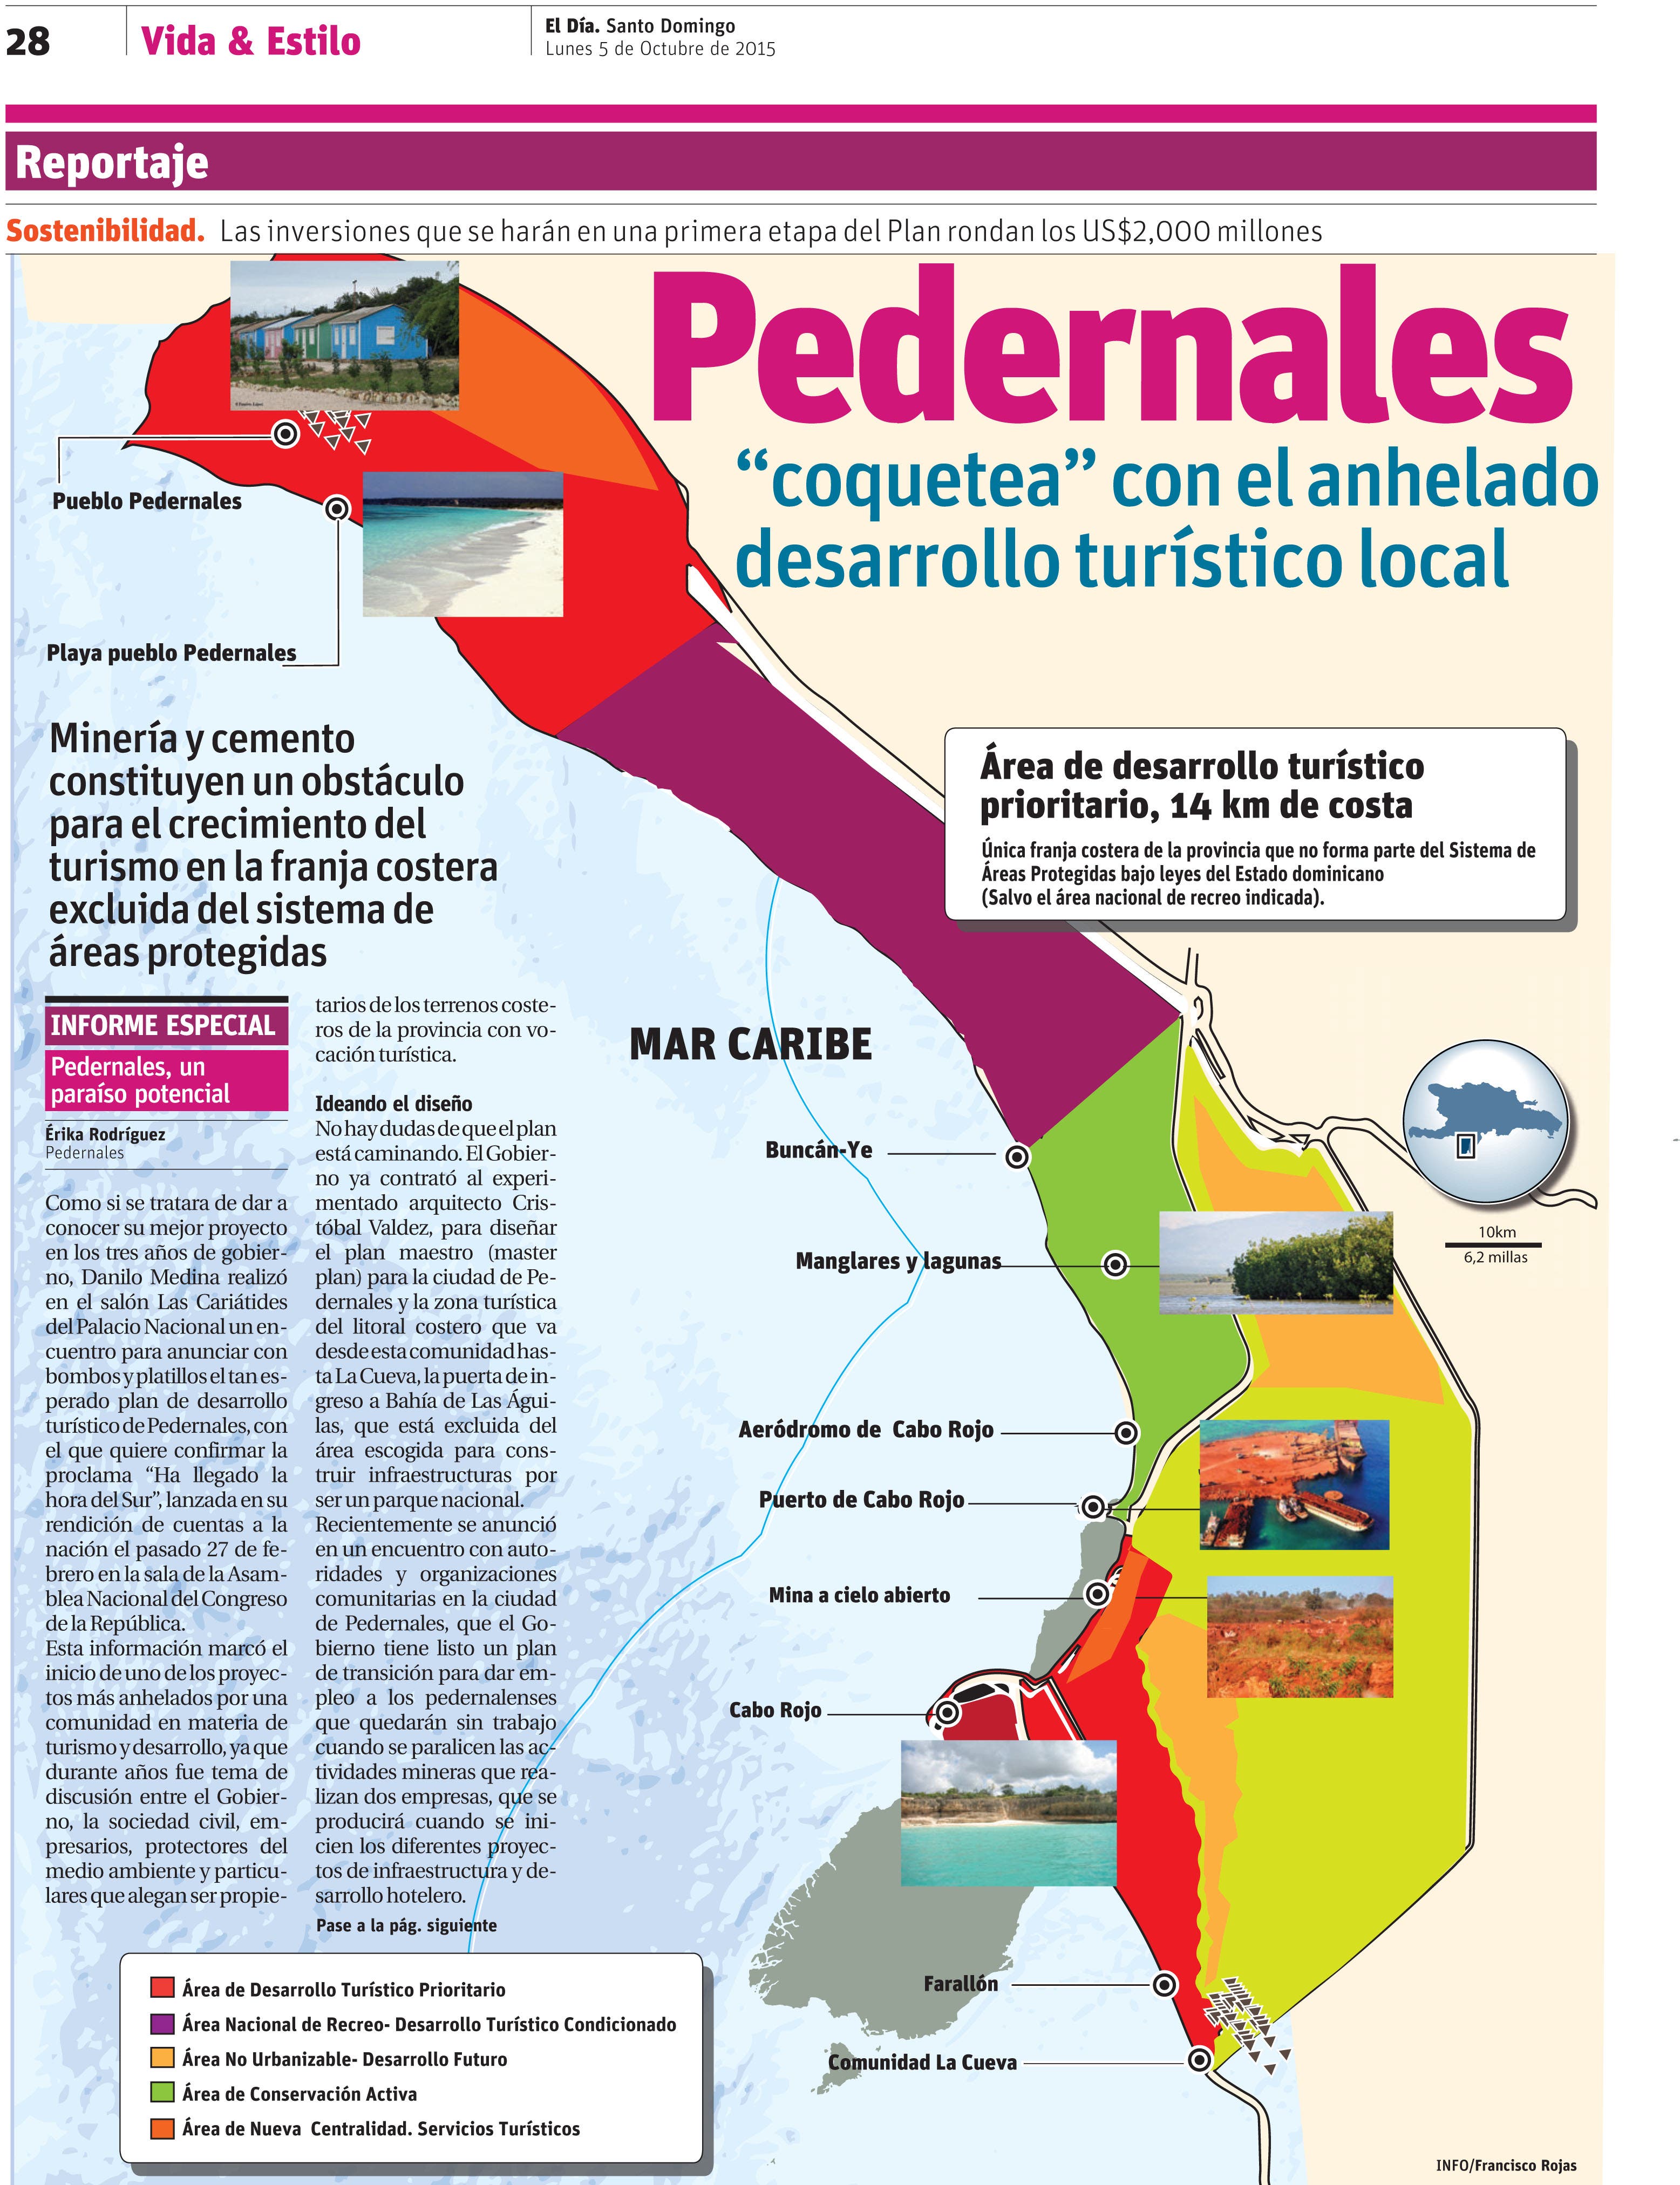 Pedernales “coquetea” con el anhelado desarrollo turístico local